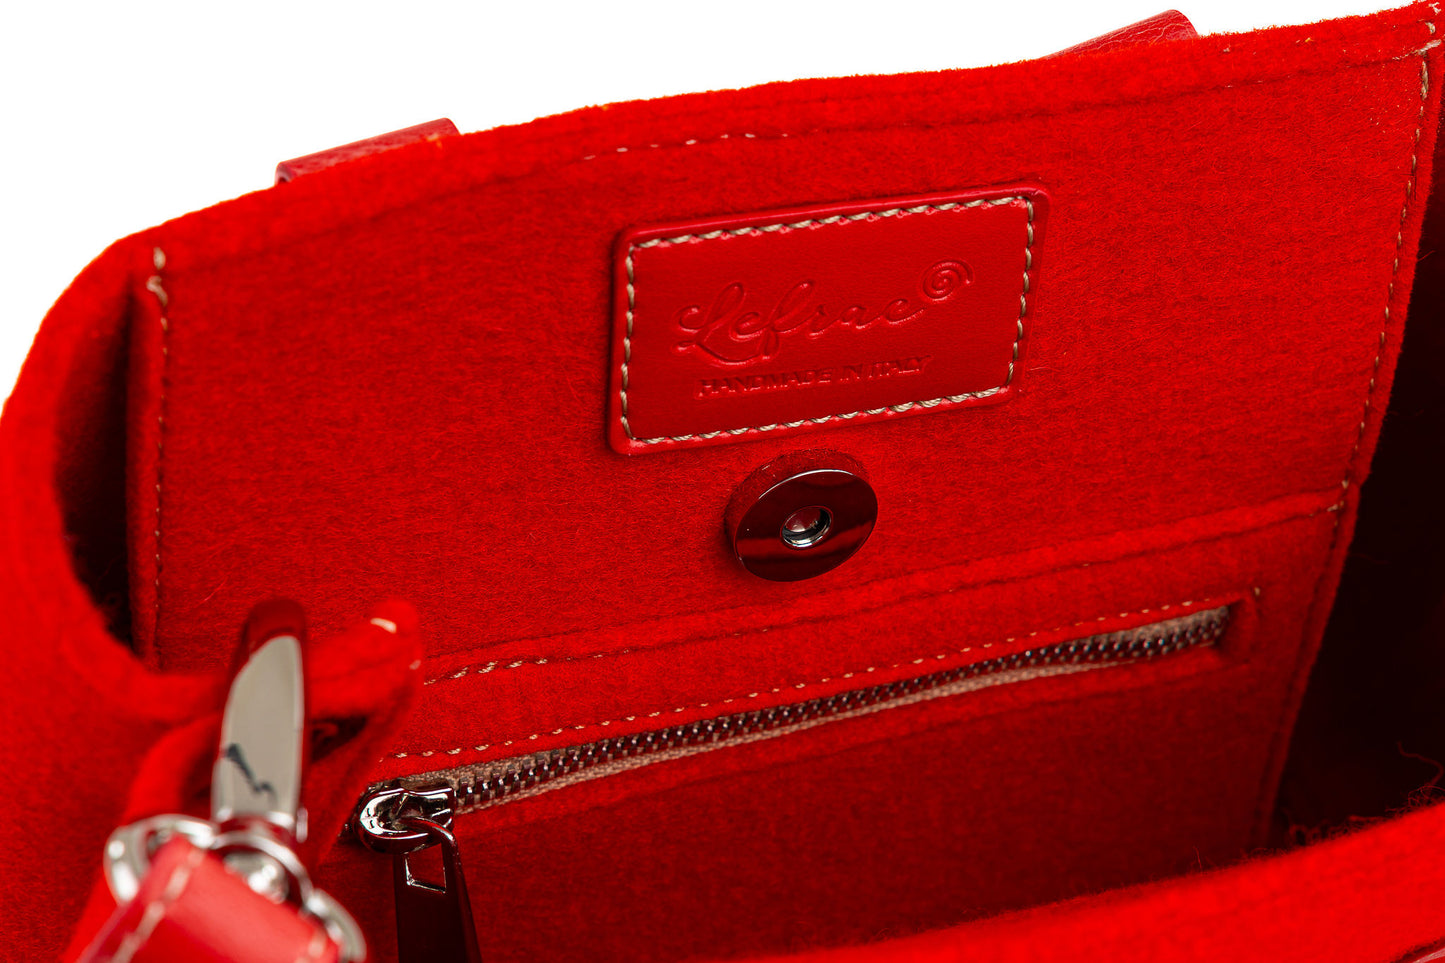 Mini borsa rossa EMMA 